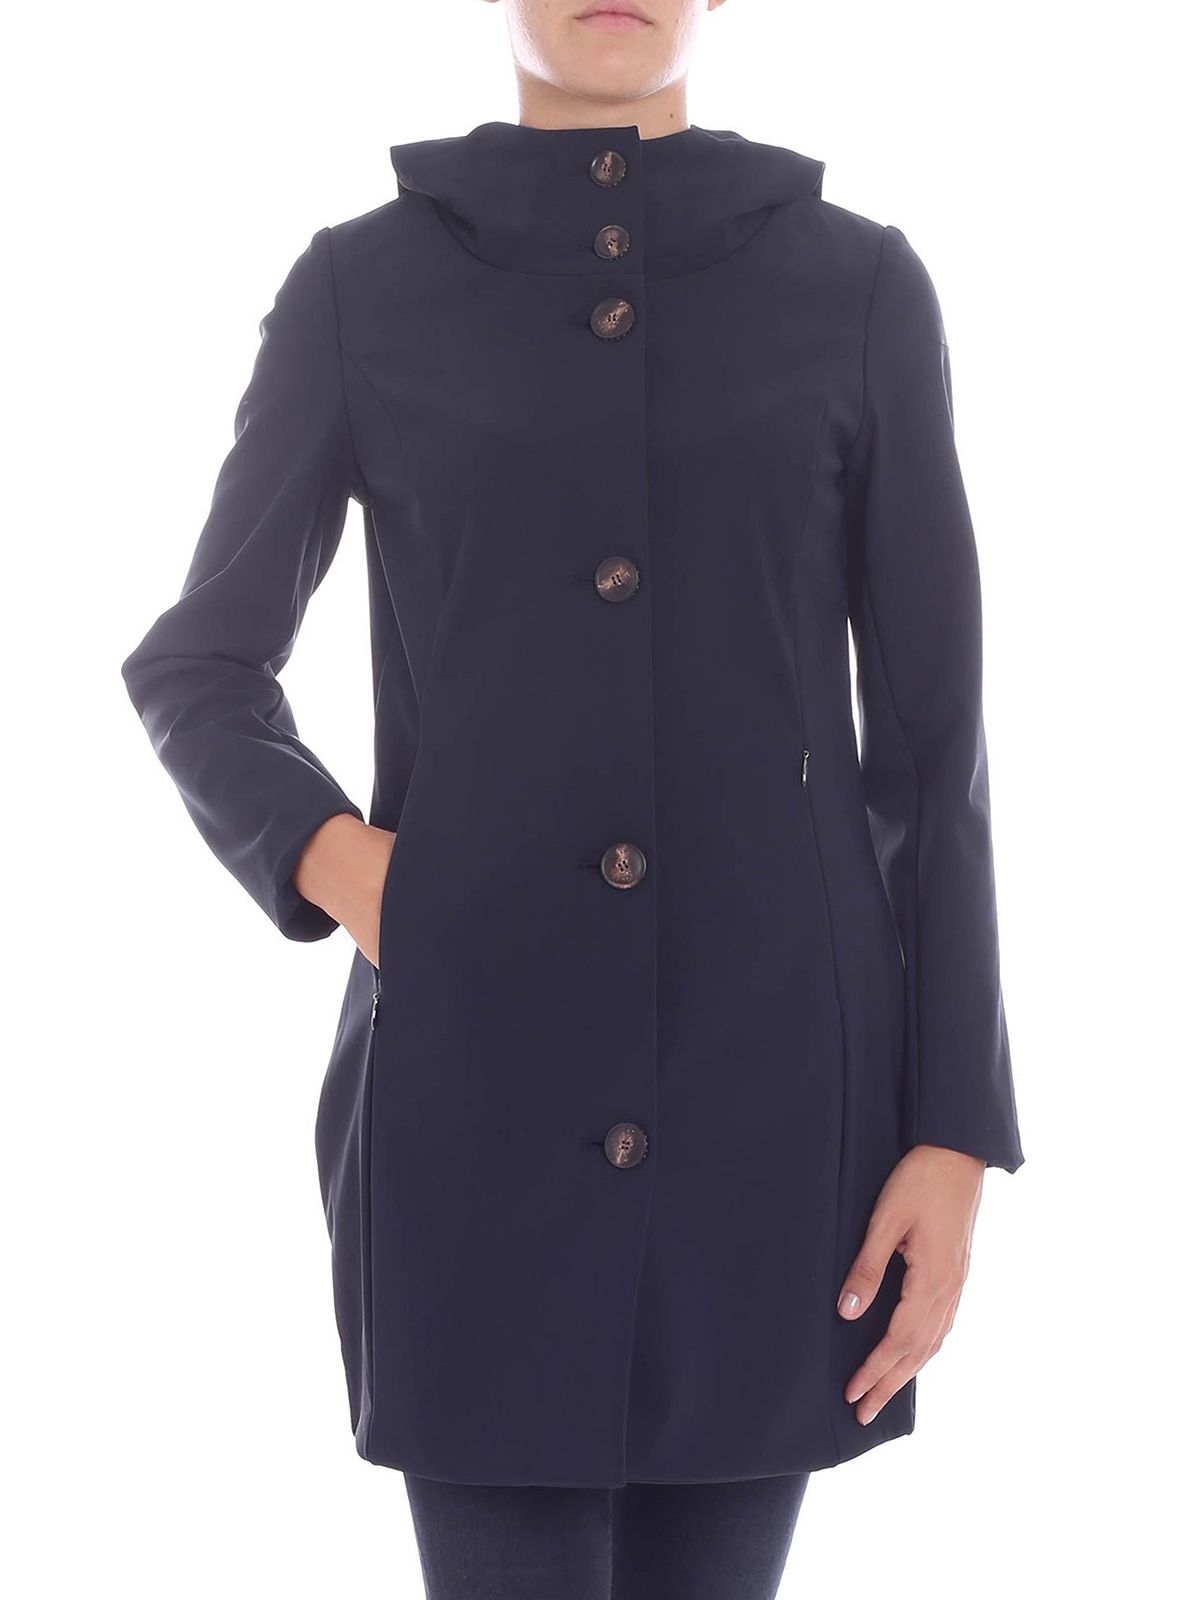 Parkas RRD Roberto Ricci Designs - Thermo Parka Lady navy nylon coat -  W1853460